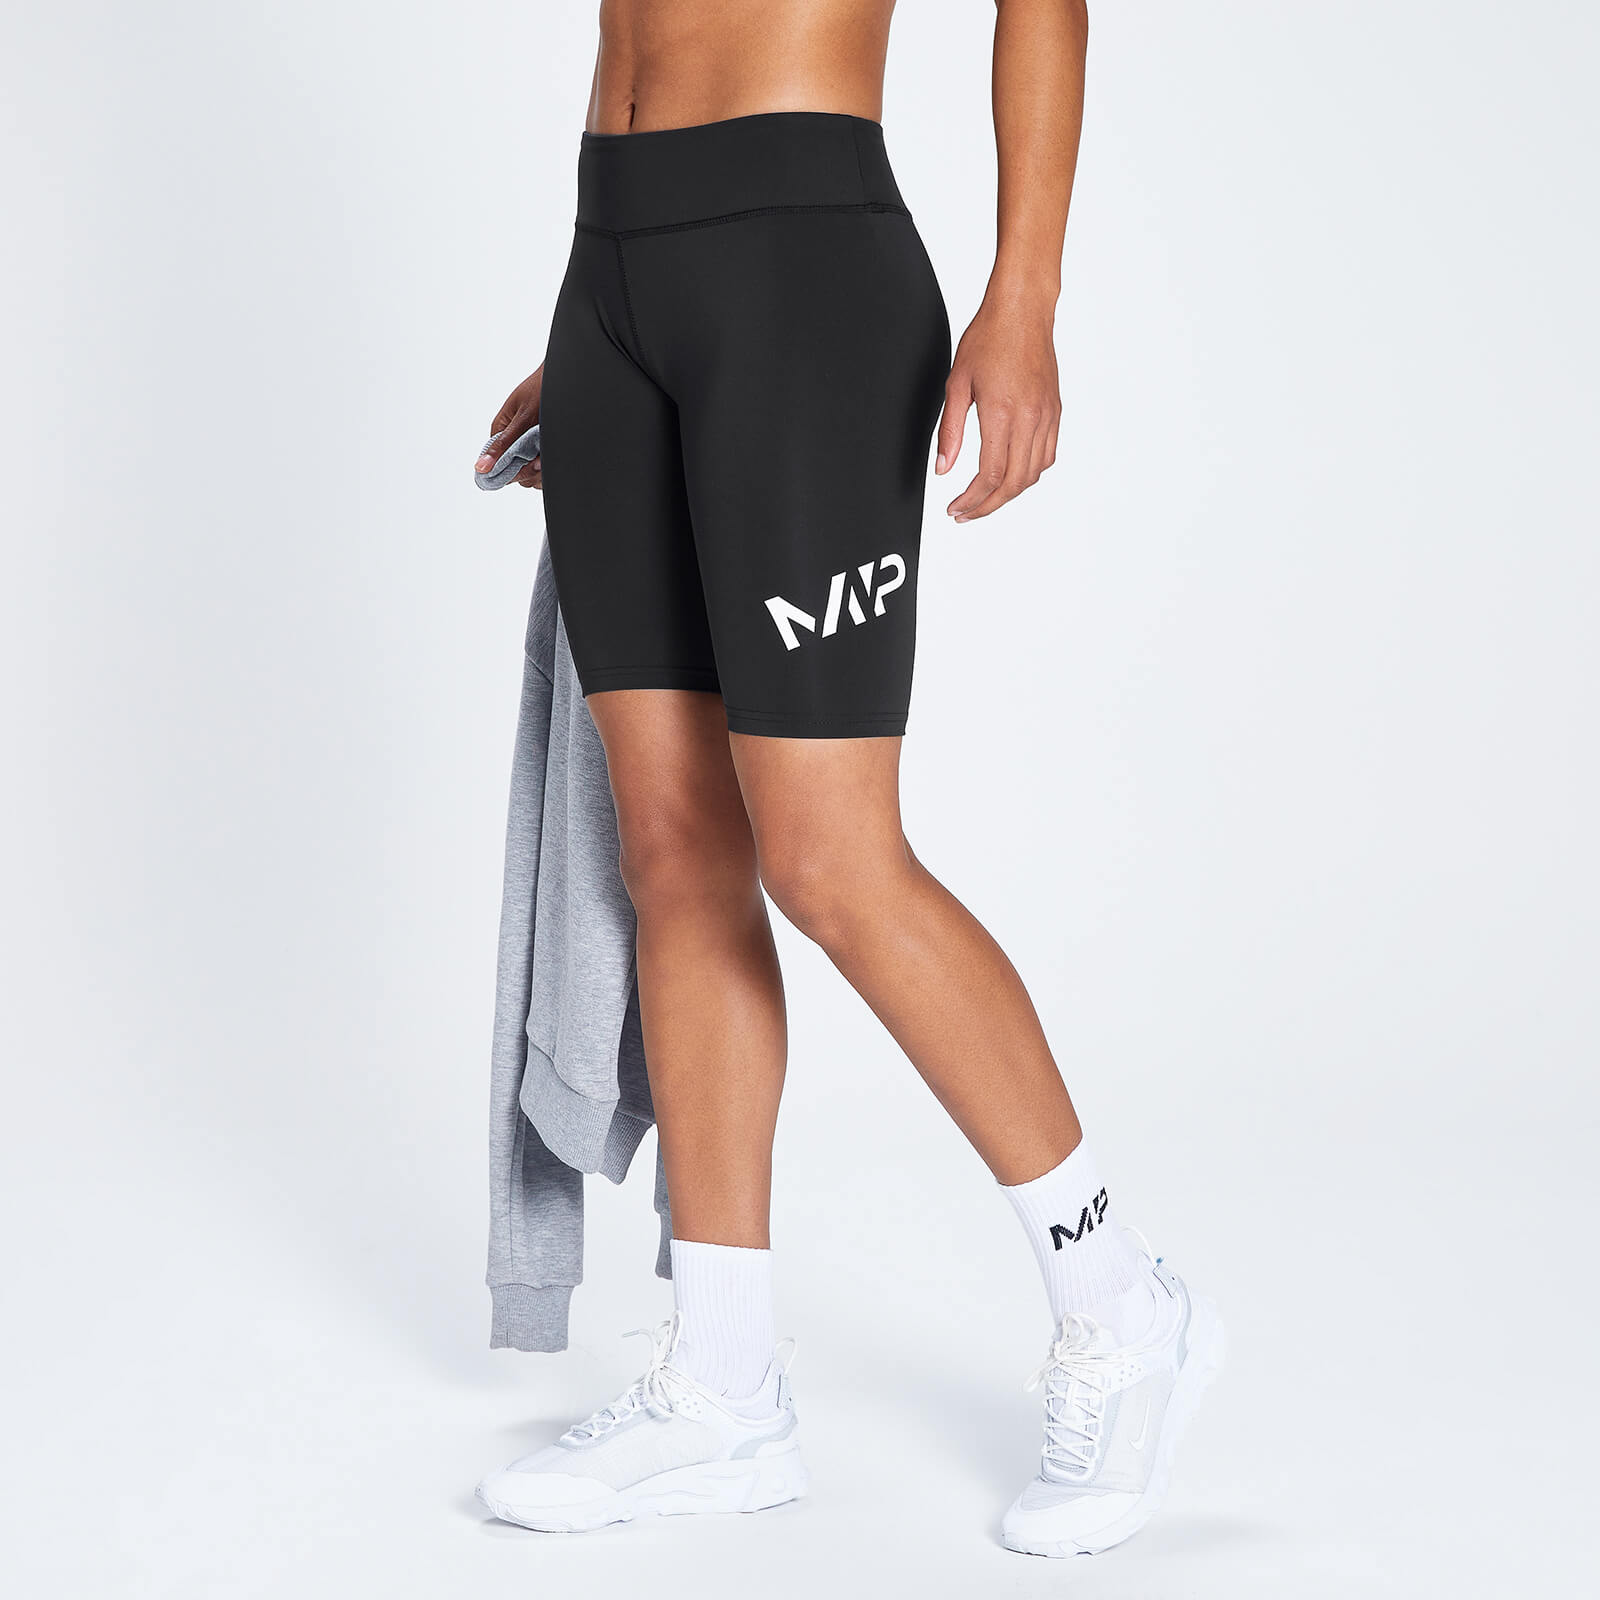 MP ženske biciklističke hlače za trening pune dužine – crne - XXS